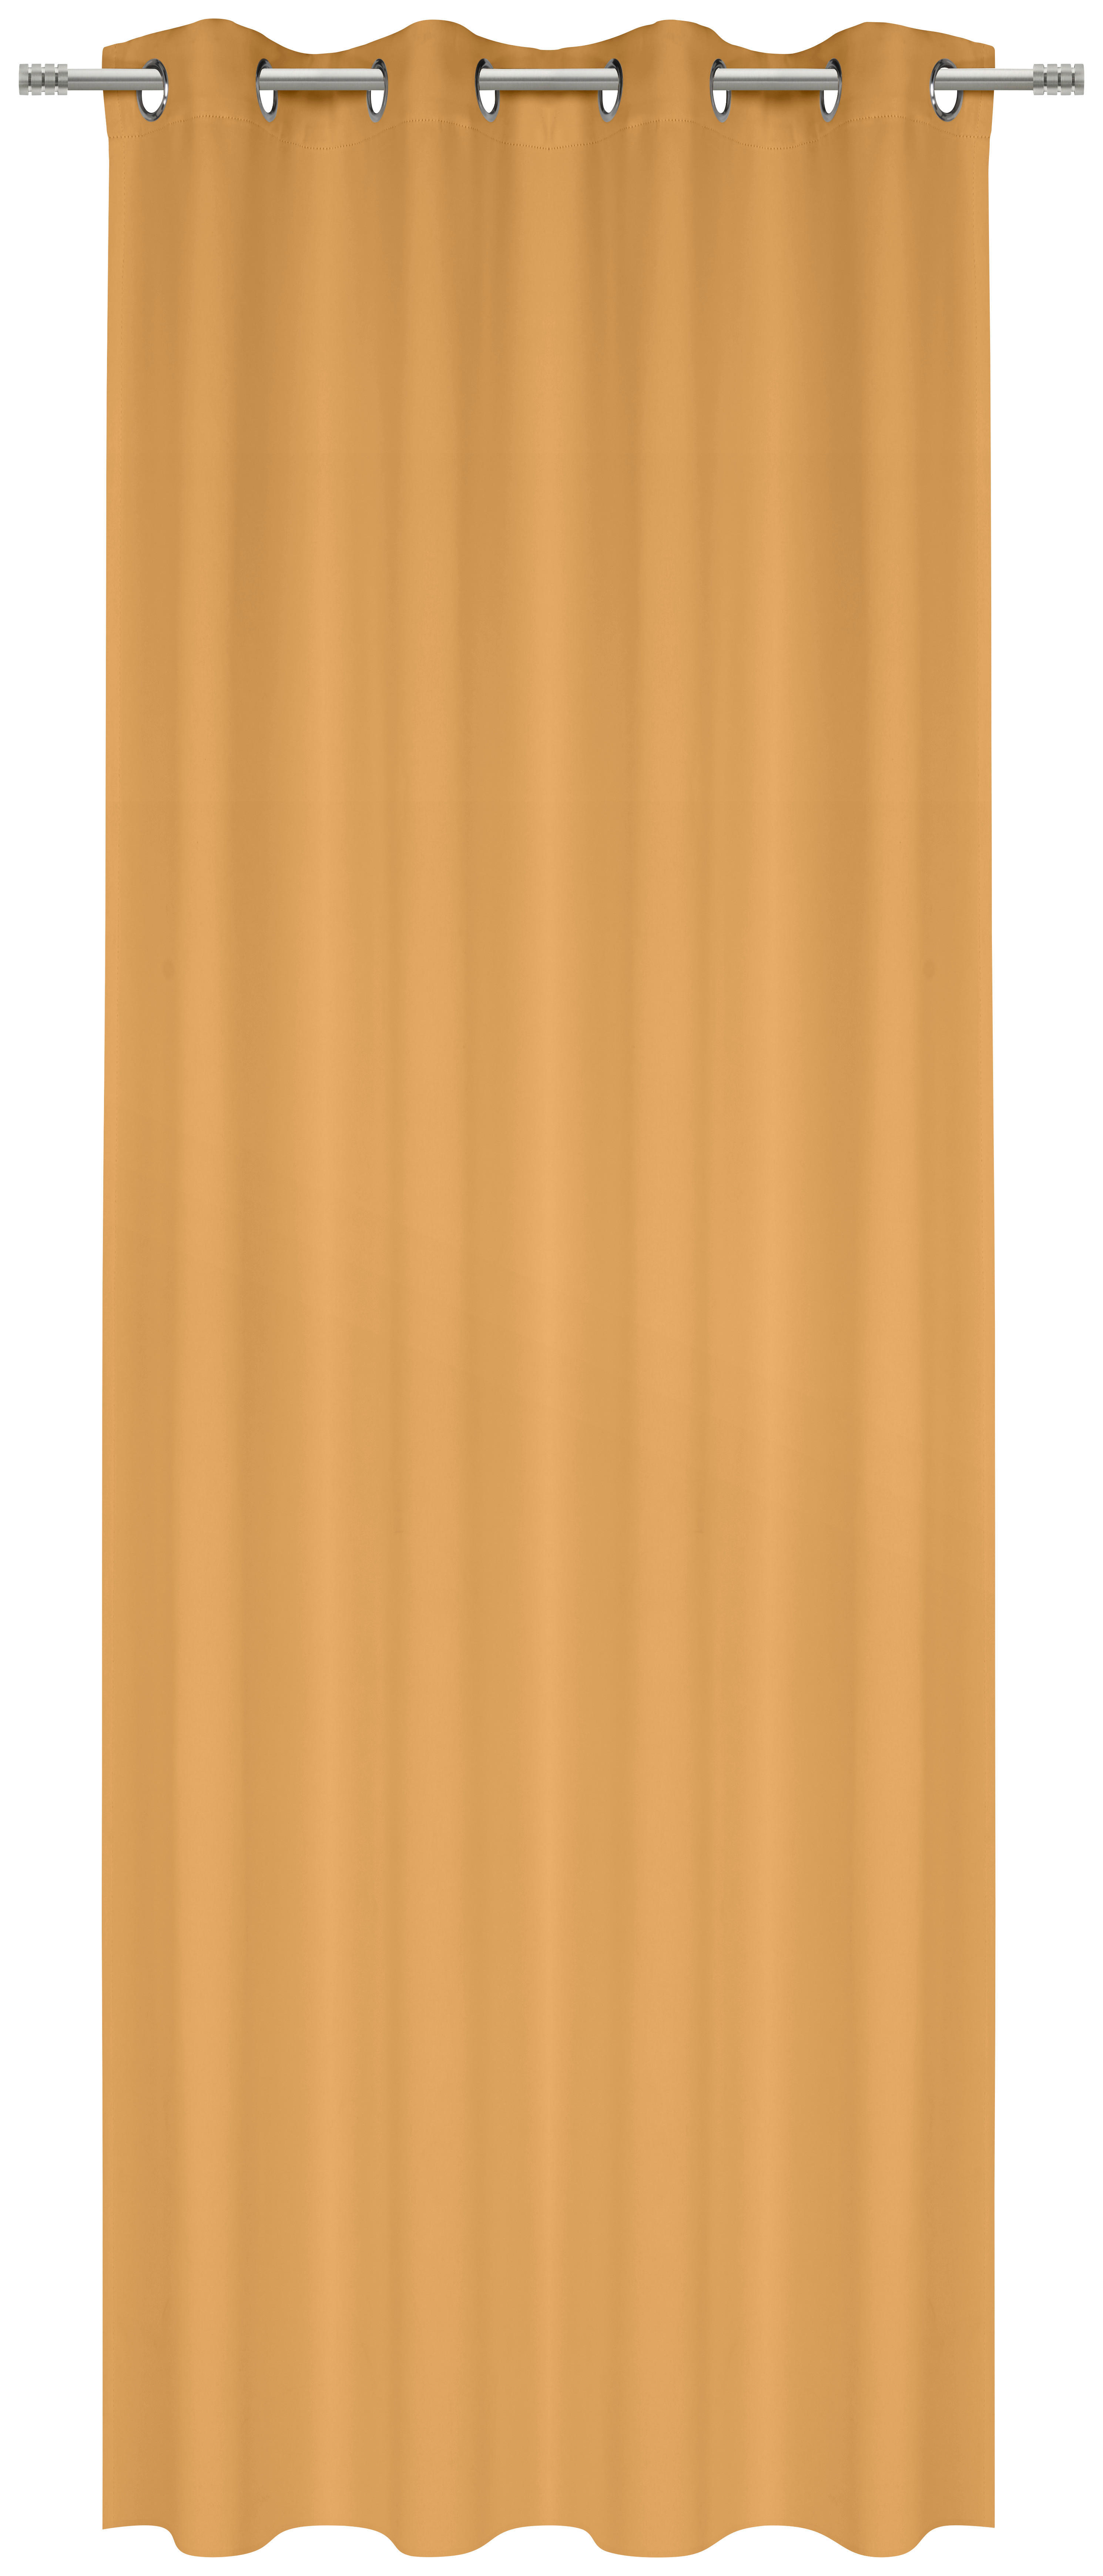 KÉSZFÜGGÖNY sötétítő  - sárga, Basics, textil (140/245cm) - Esposa